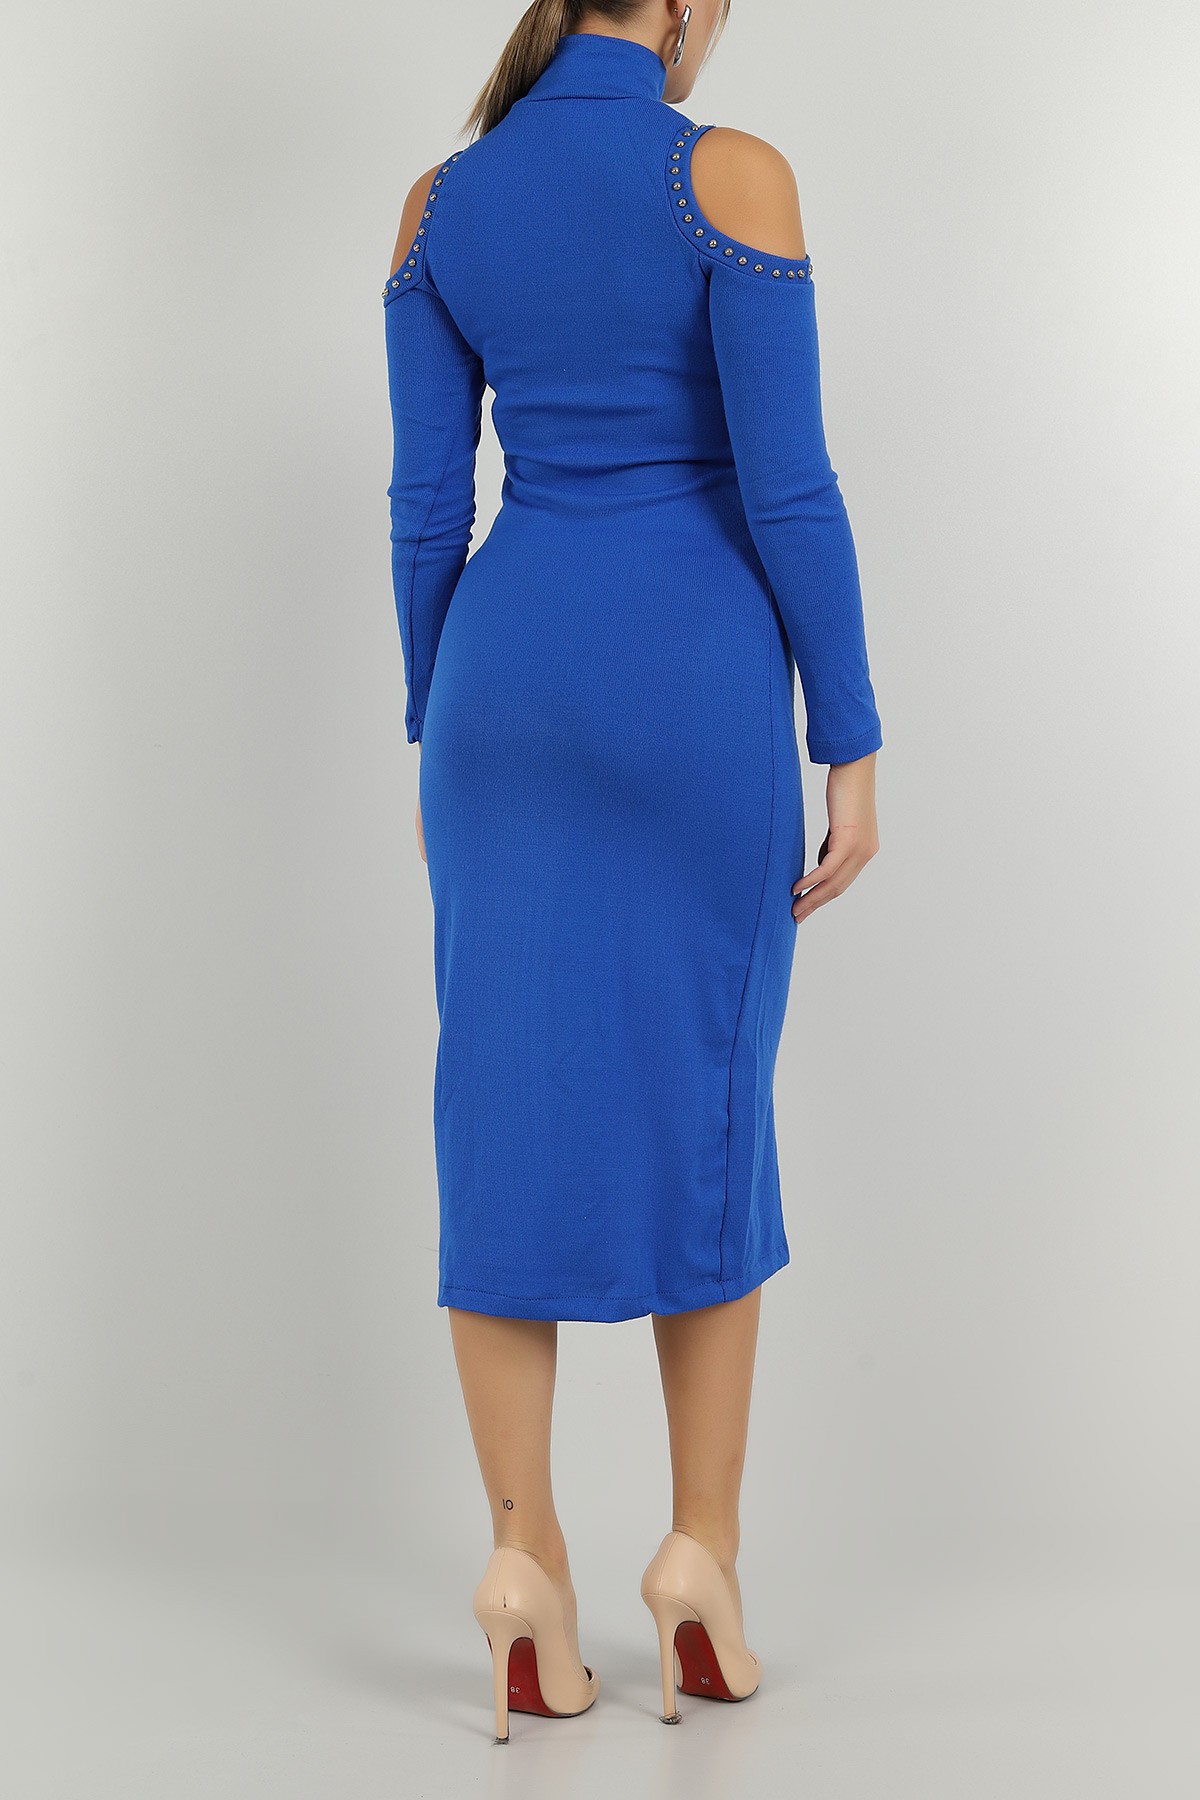 Saks Mavisi Taşlı Tasarım Triko Elbise 146776